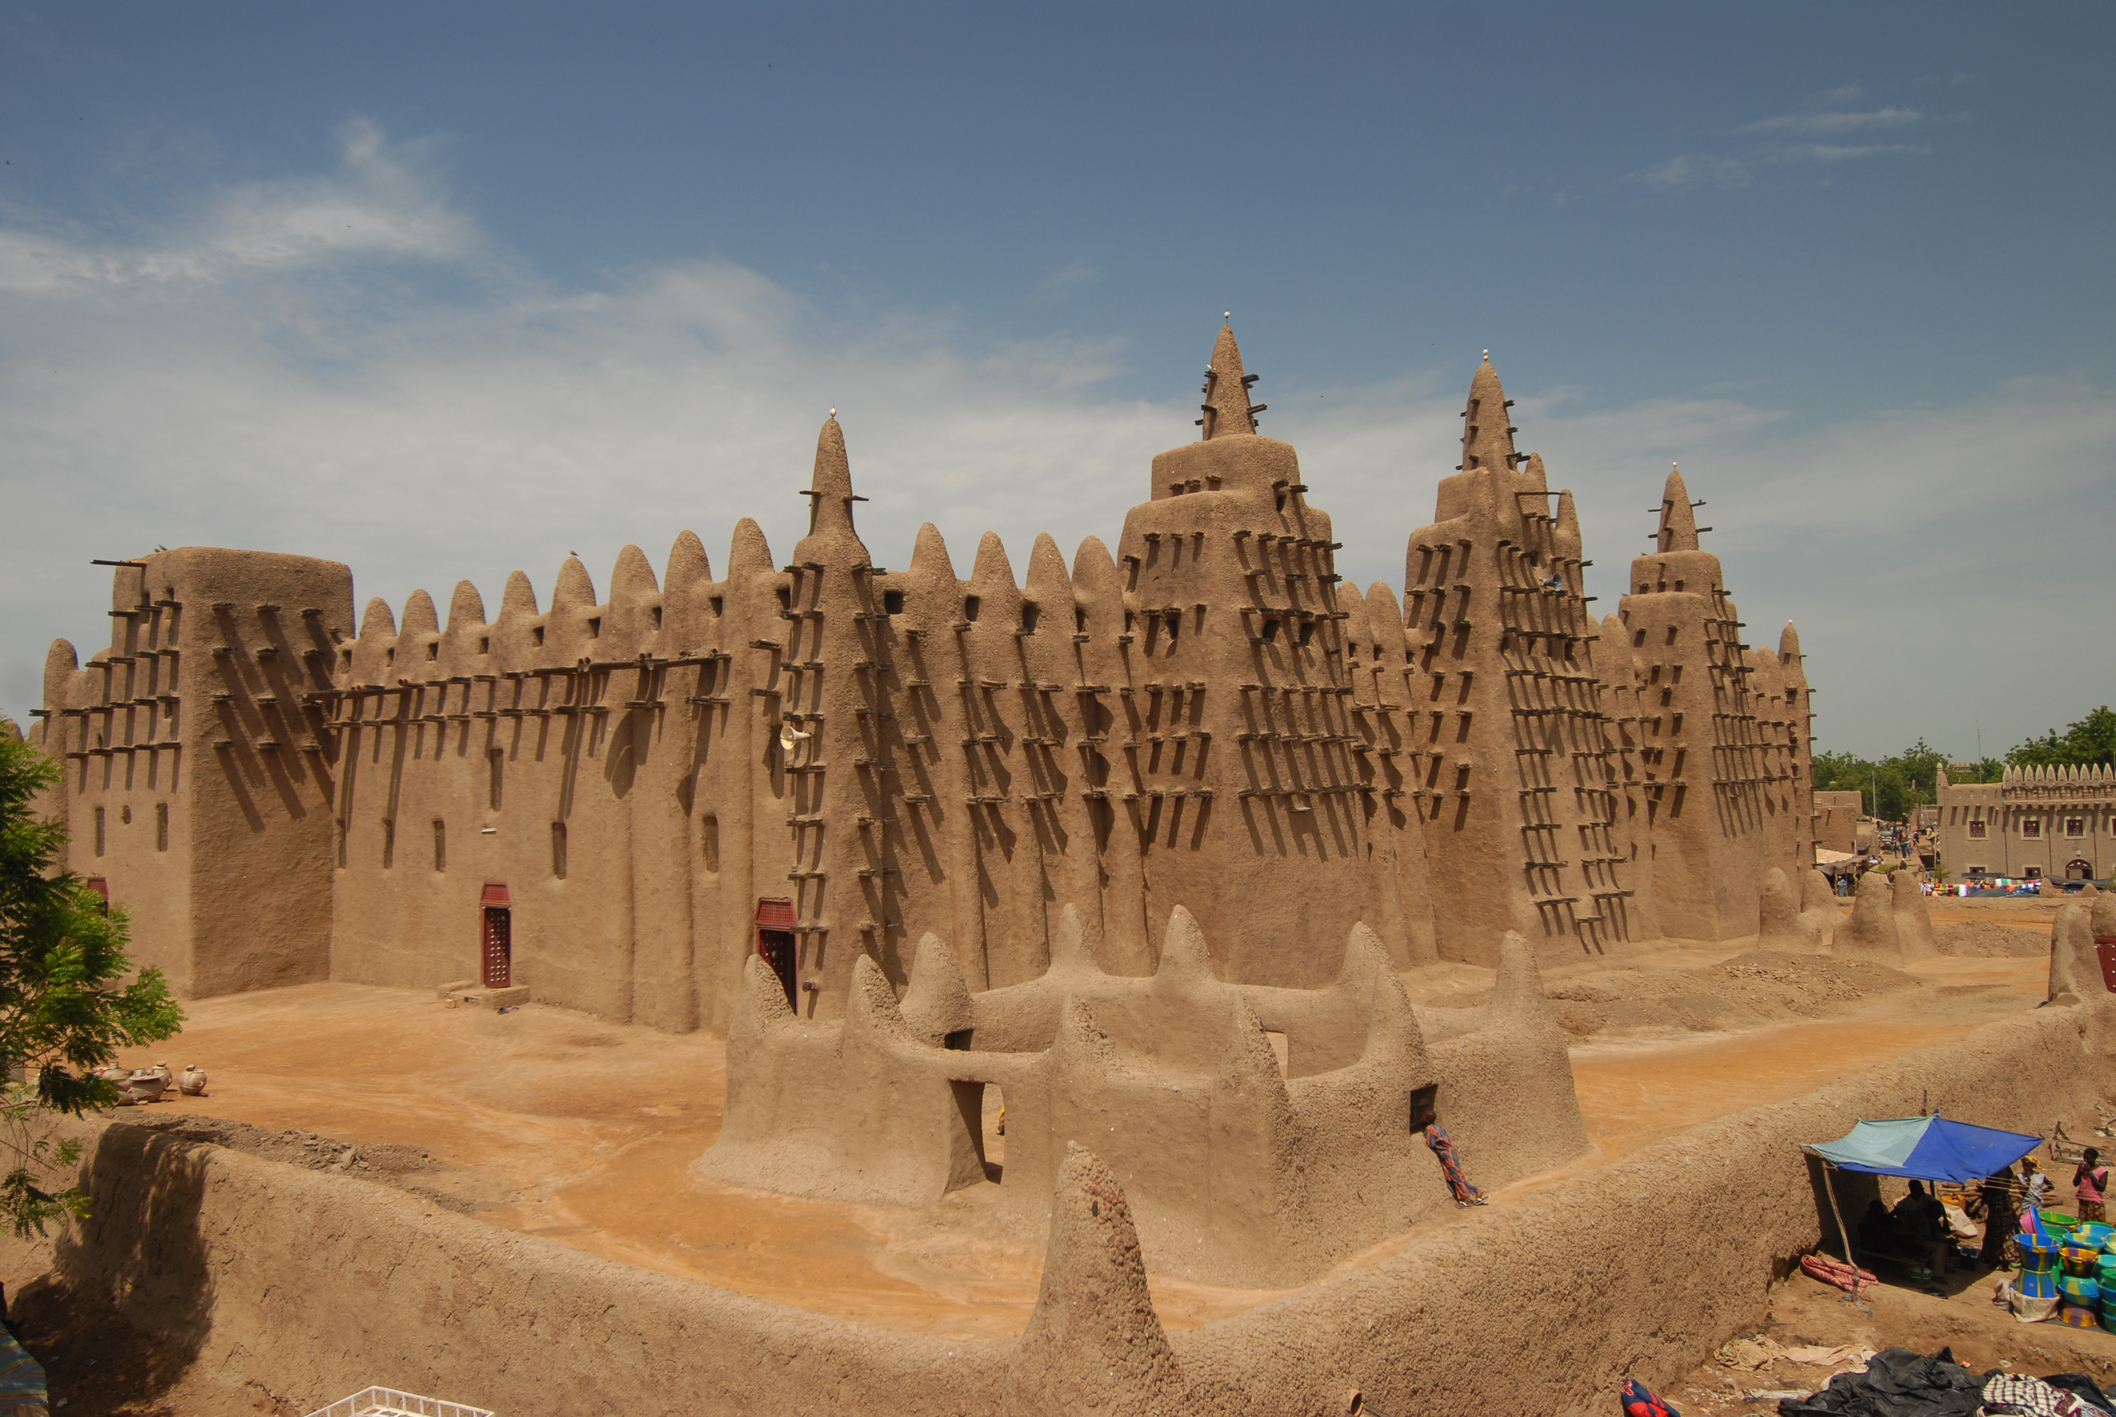 Голямата джамия в Джене е най-голямата сграда от кирпич в света, смятана от много архитекти за най-голямото постижение на Судано-сахелския архитектурен стил, макар и с определено ислямско влияние. Джамията се намира в град Джене, Мали